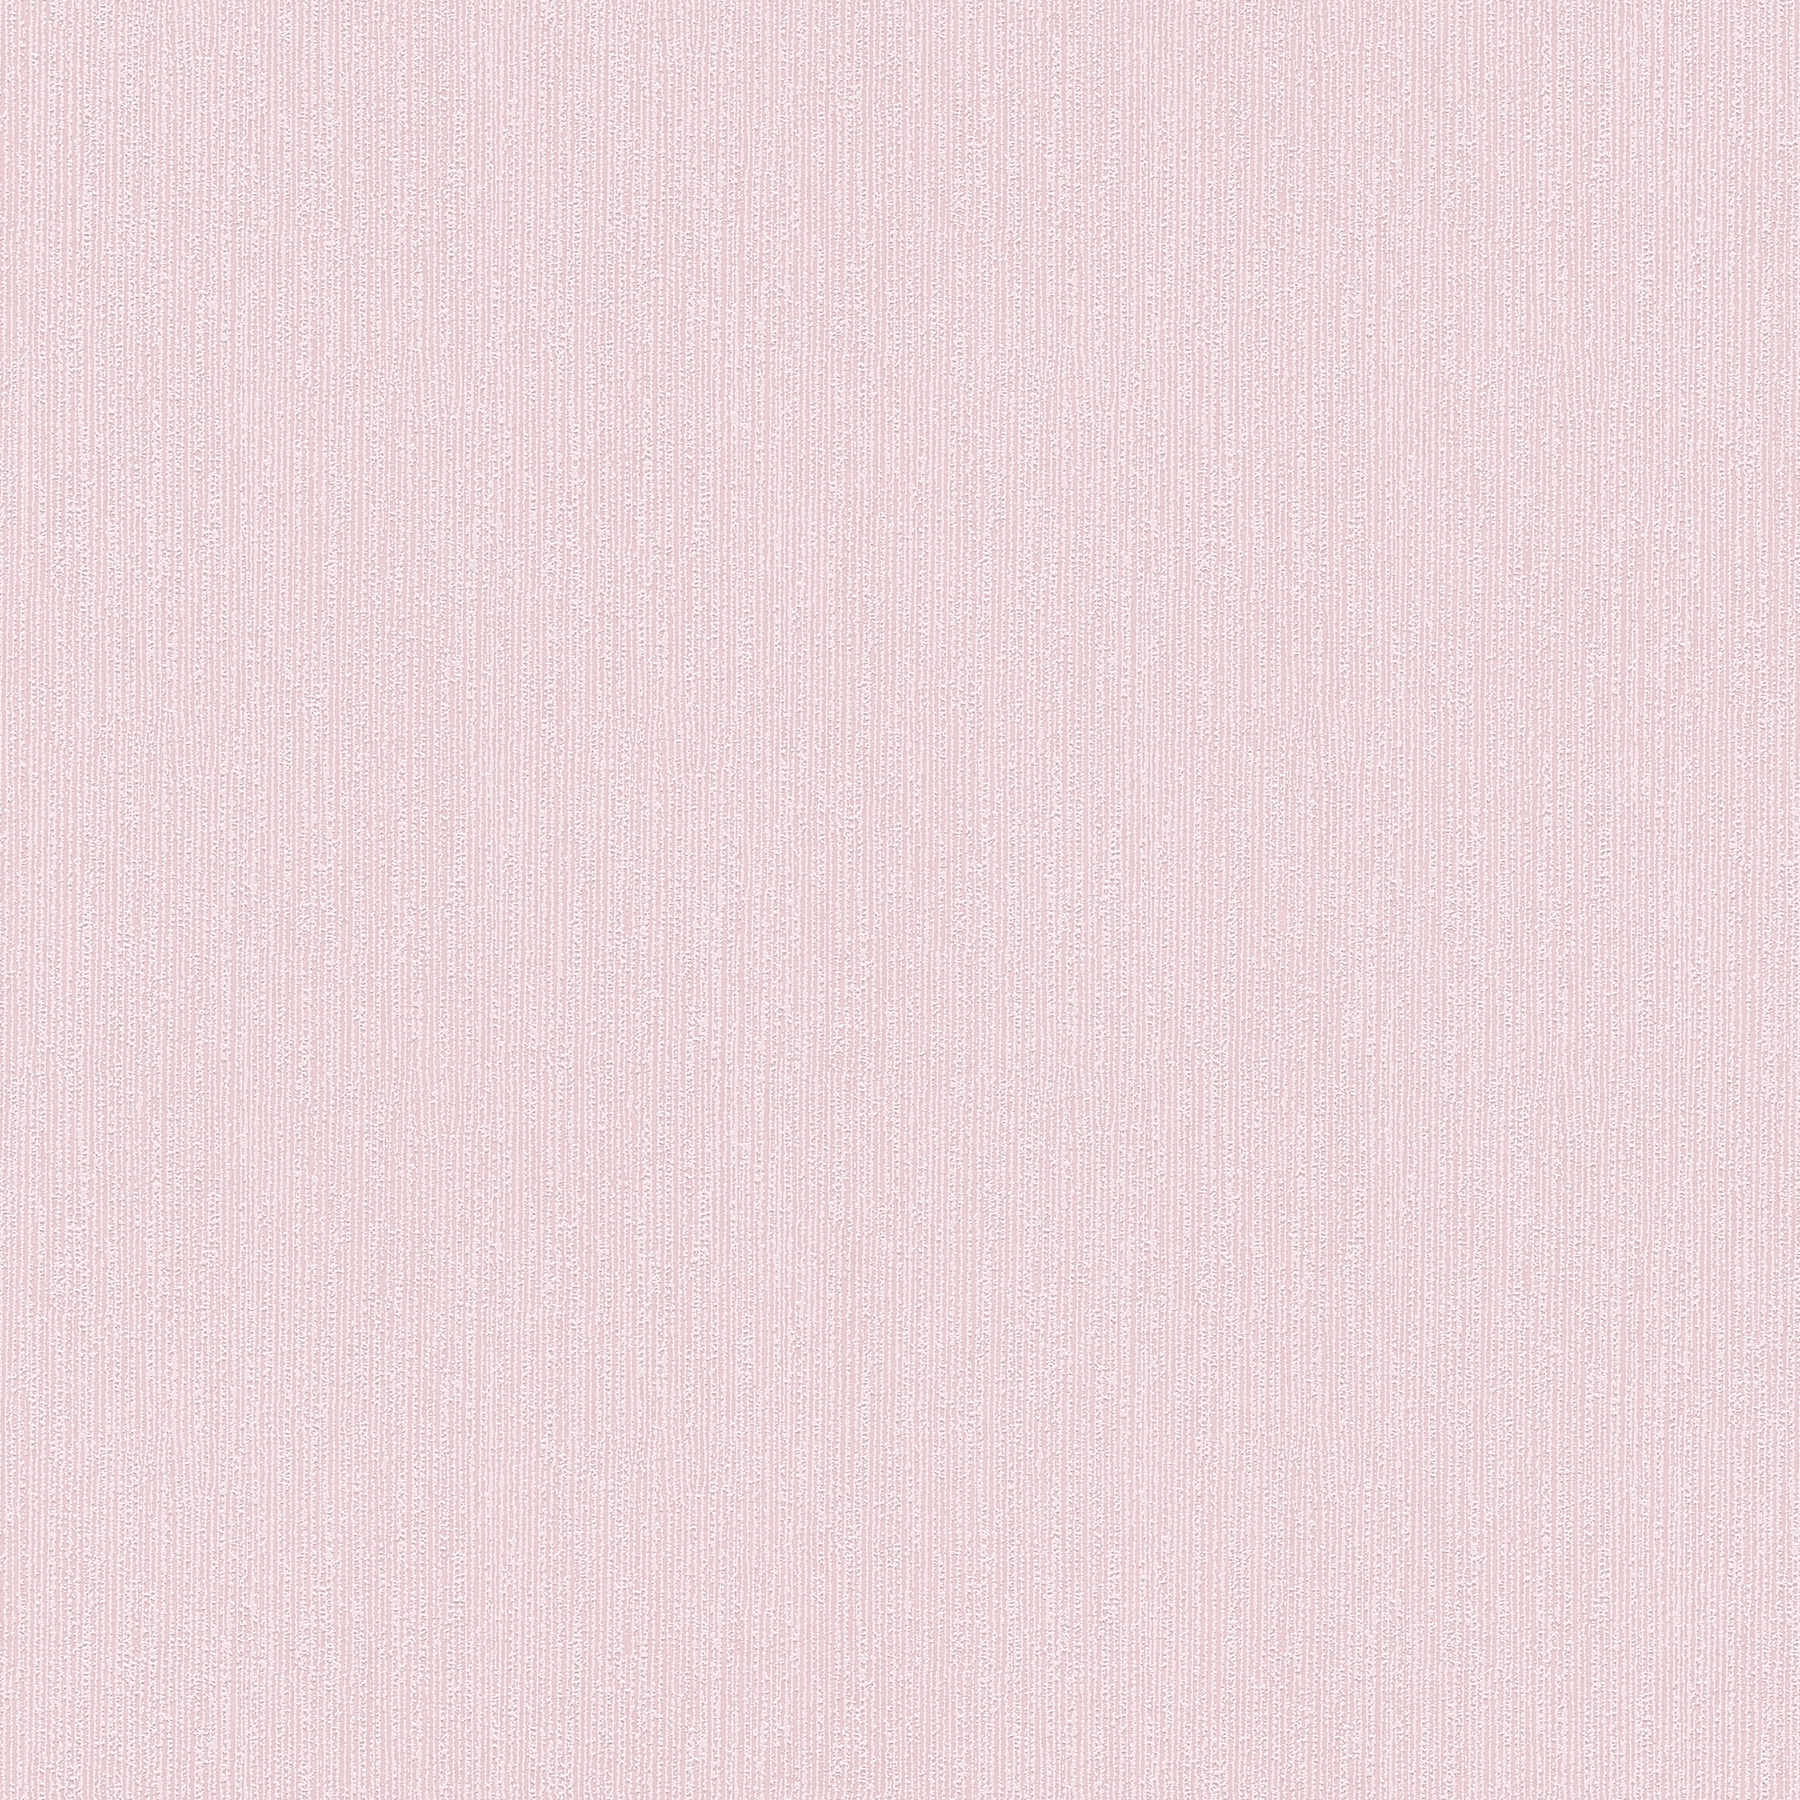 Papier peint pastel rose clair avec motifs structurés
